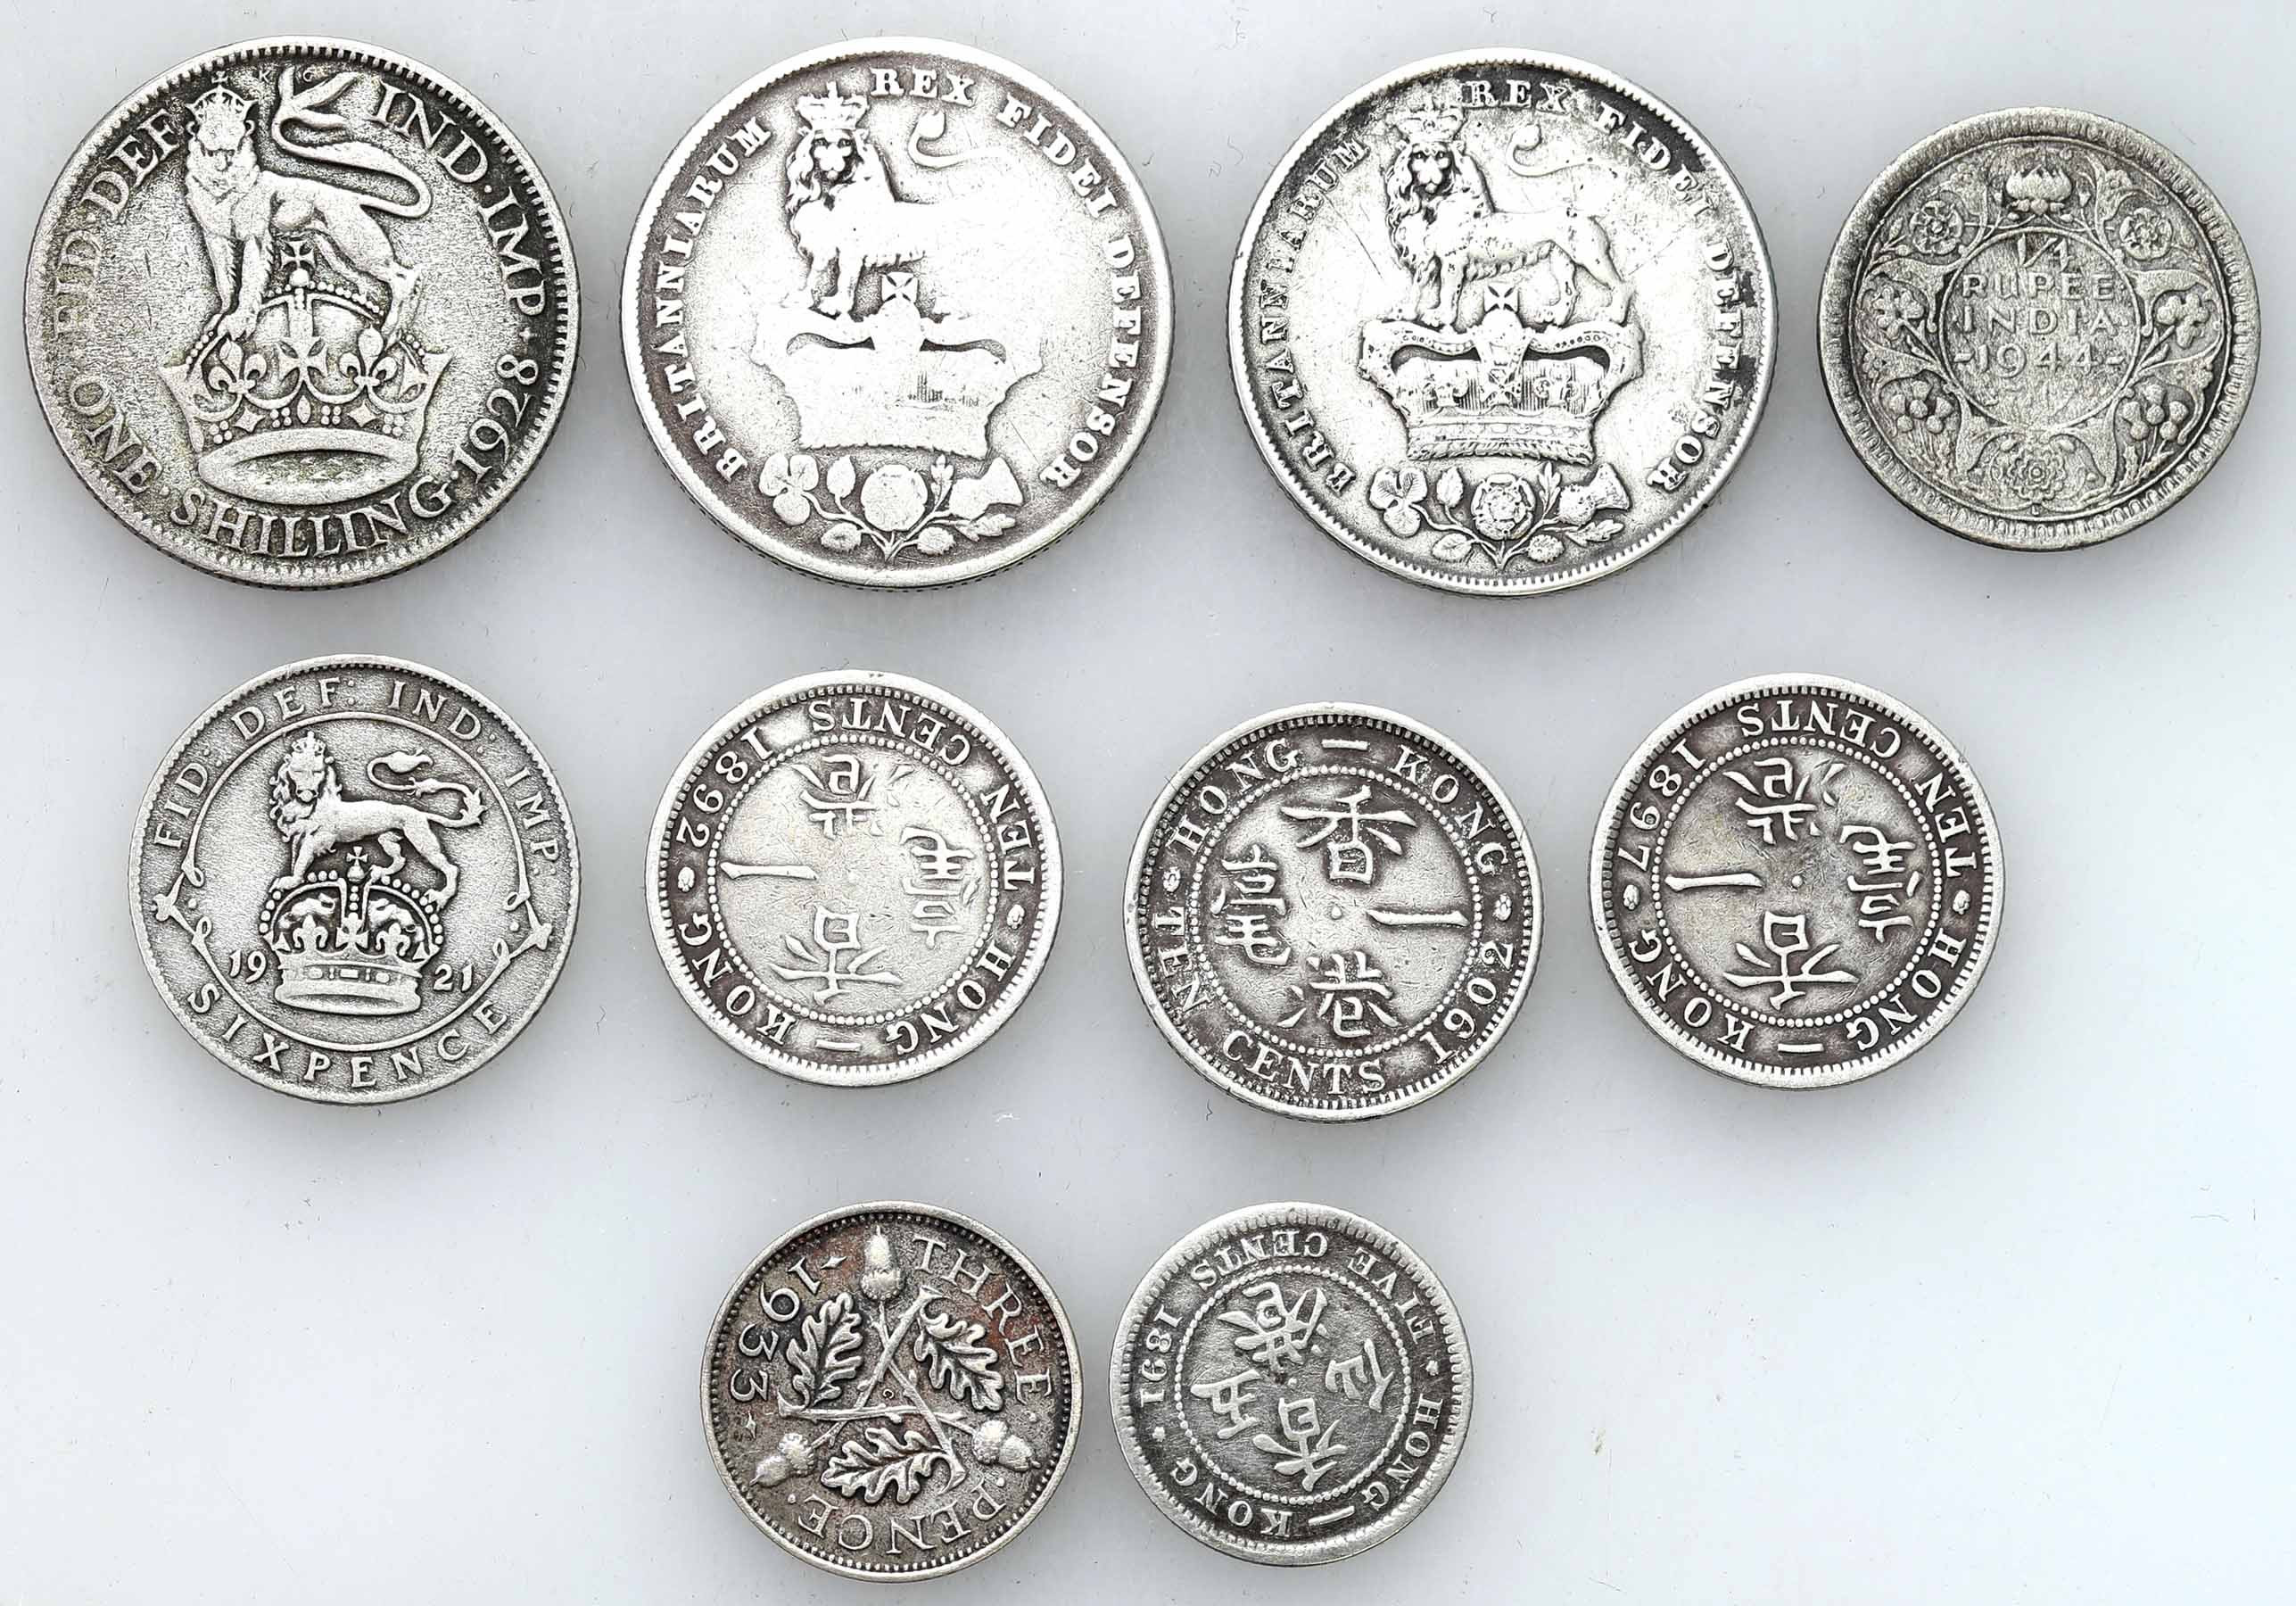 Wielka Brytania. 5 - 10 centów, 3 - 6 pence, shilling 1825 - 1944, zestaw 10 monet